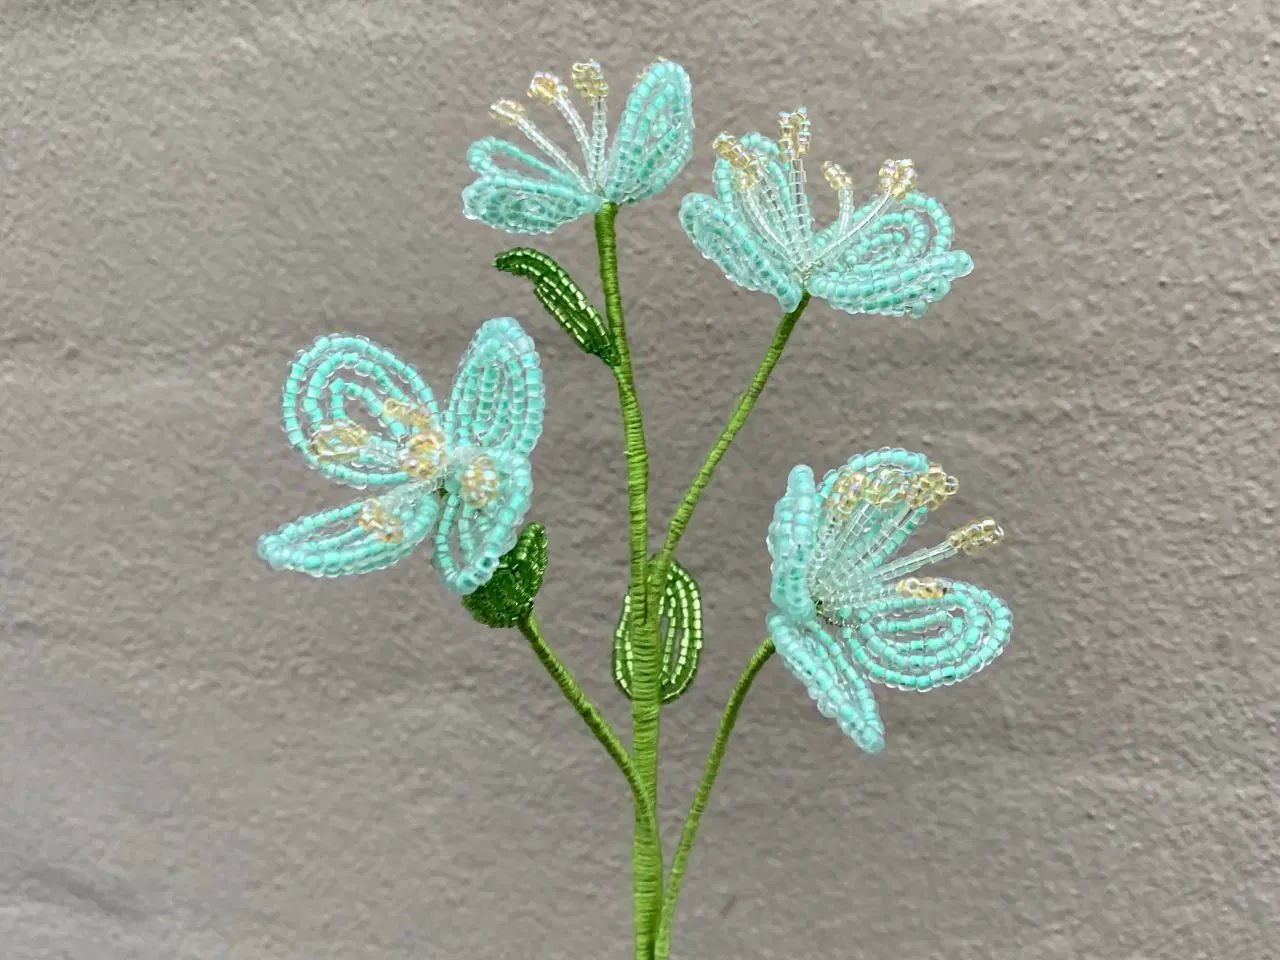 Billede 5 - Unikke evigheds blomster, lavet af perler